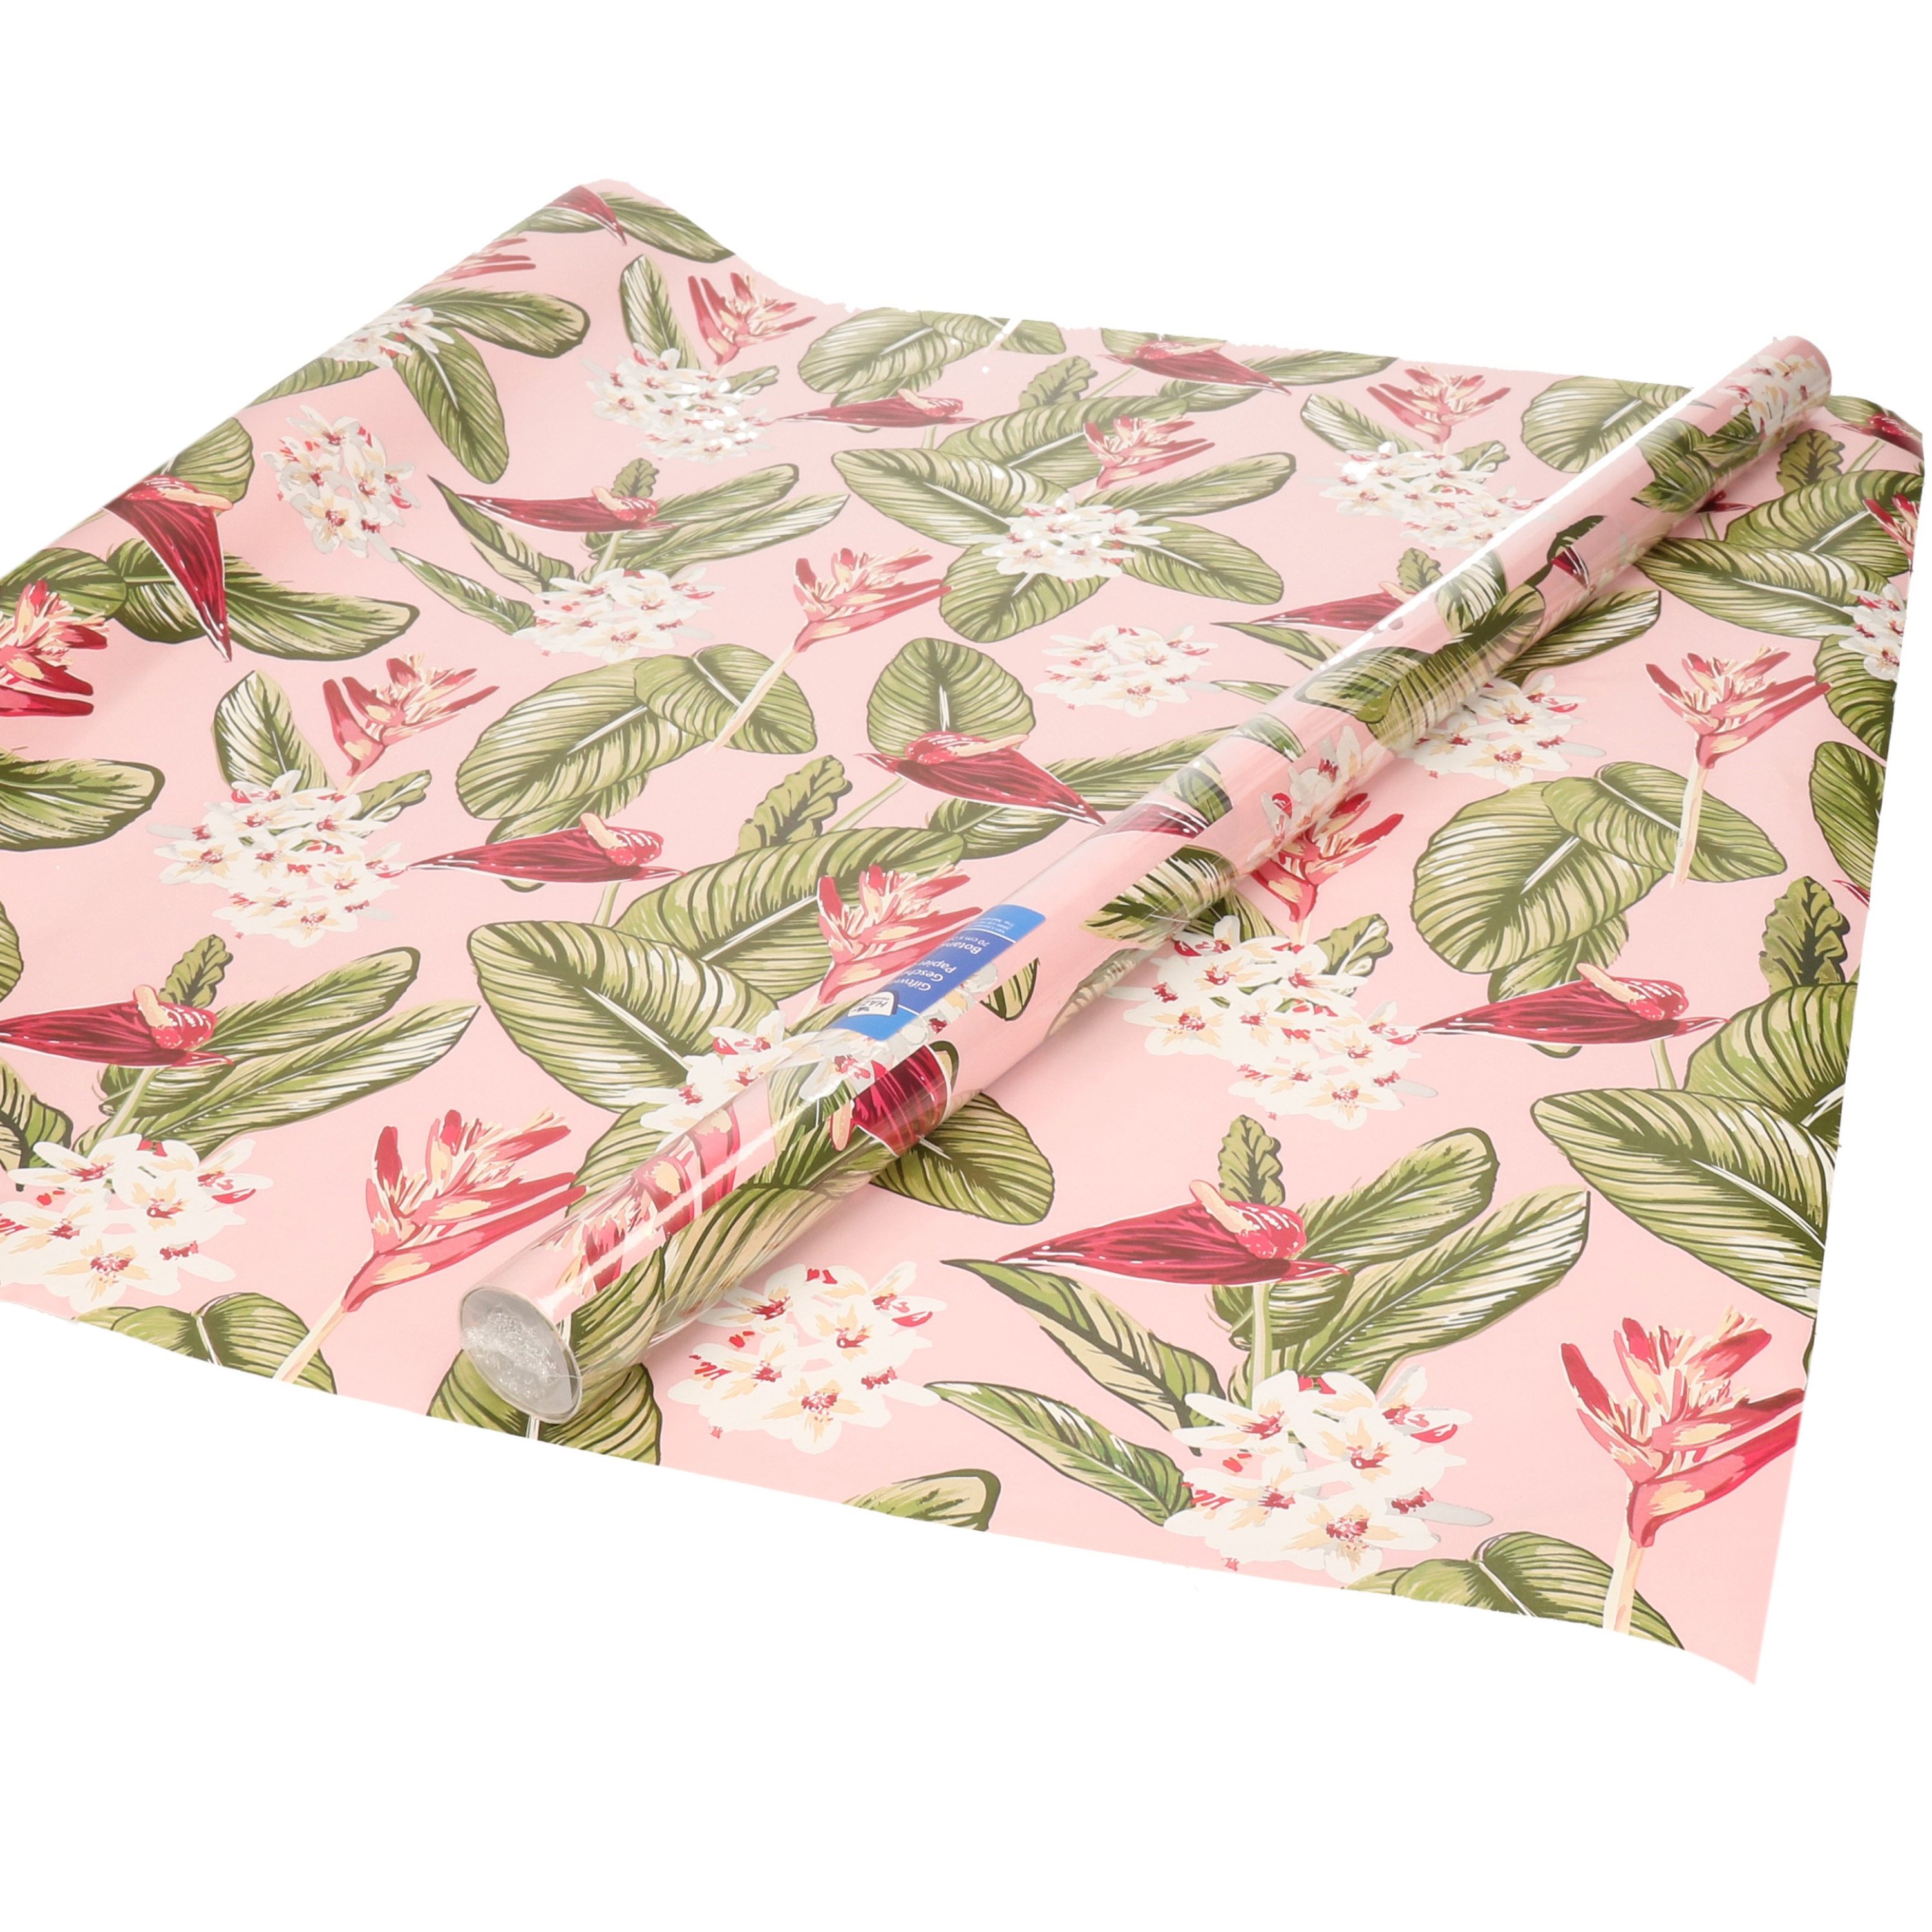 Inpakpapier/cadeaupapier roze met grote bloemen/bladeren design 200 x 70 cm